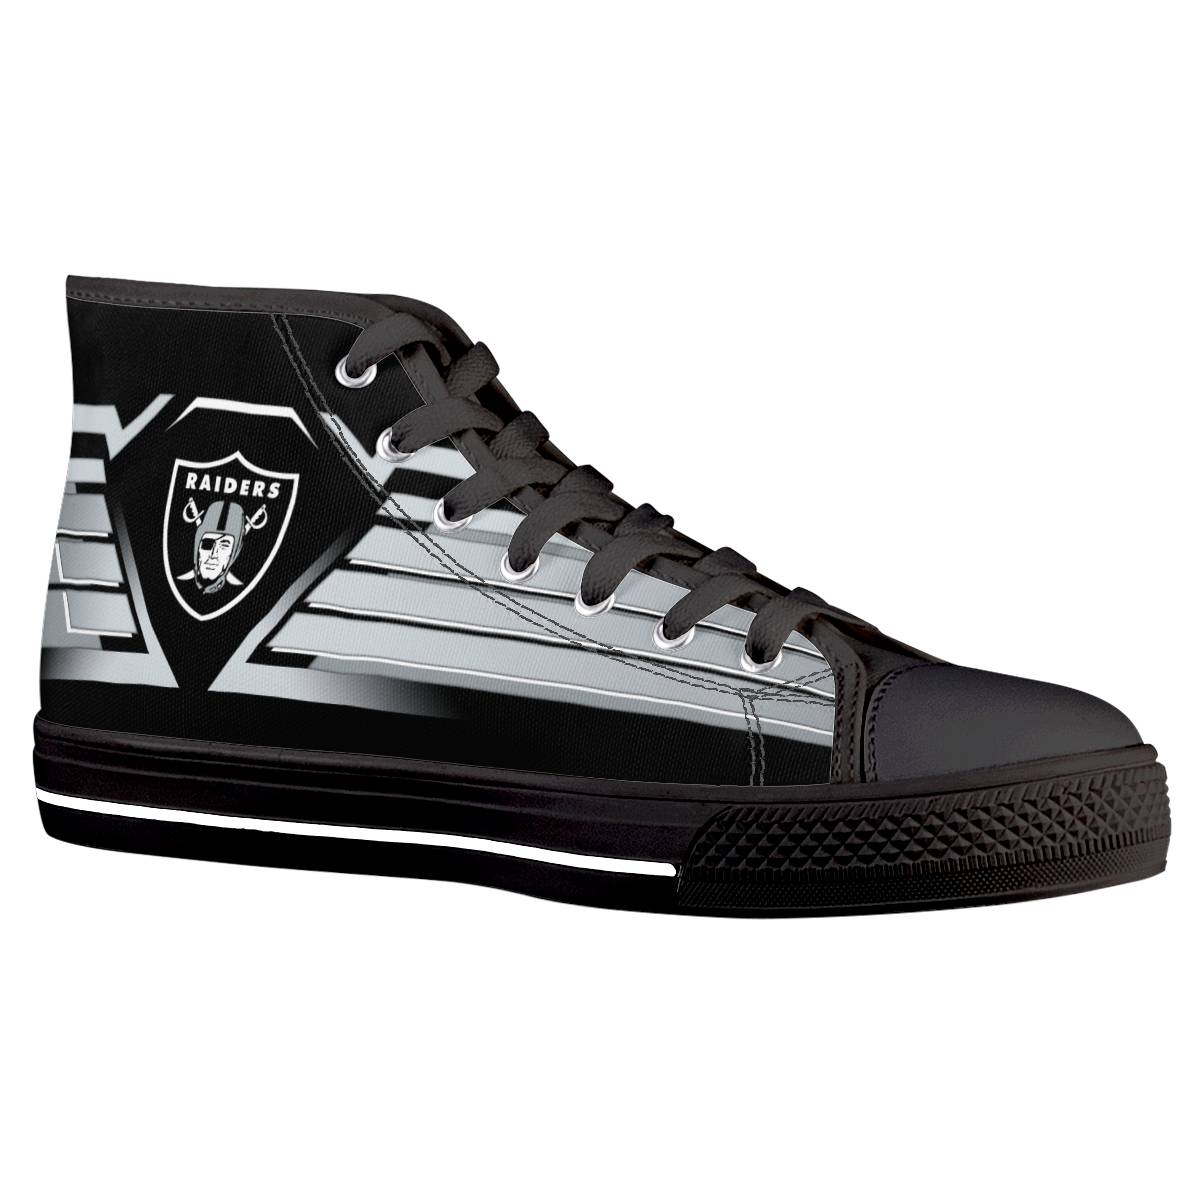 Men's Las Vegas Raiders High Top Canvas Sneakers 002